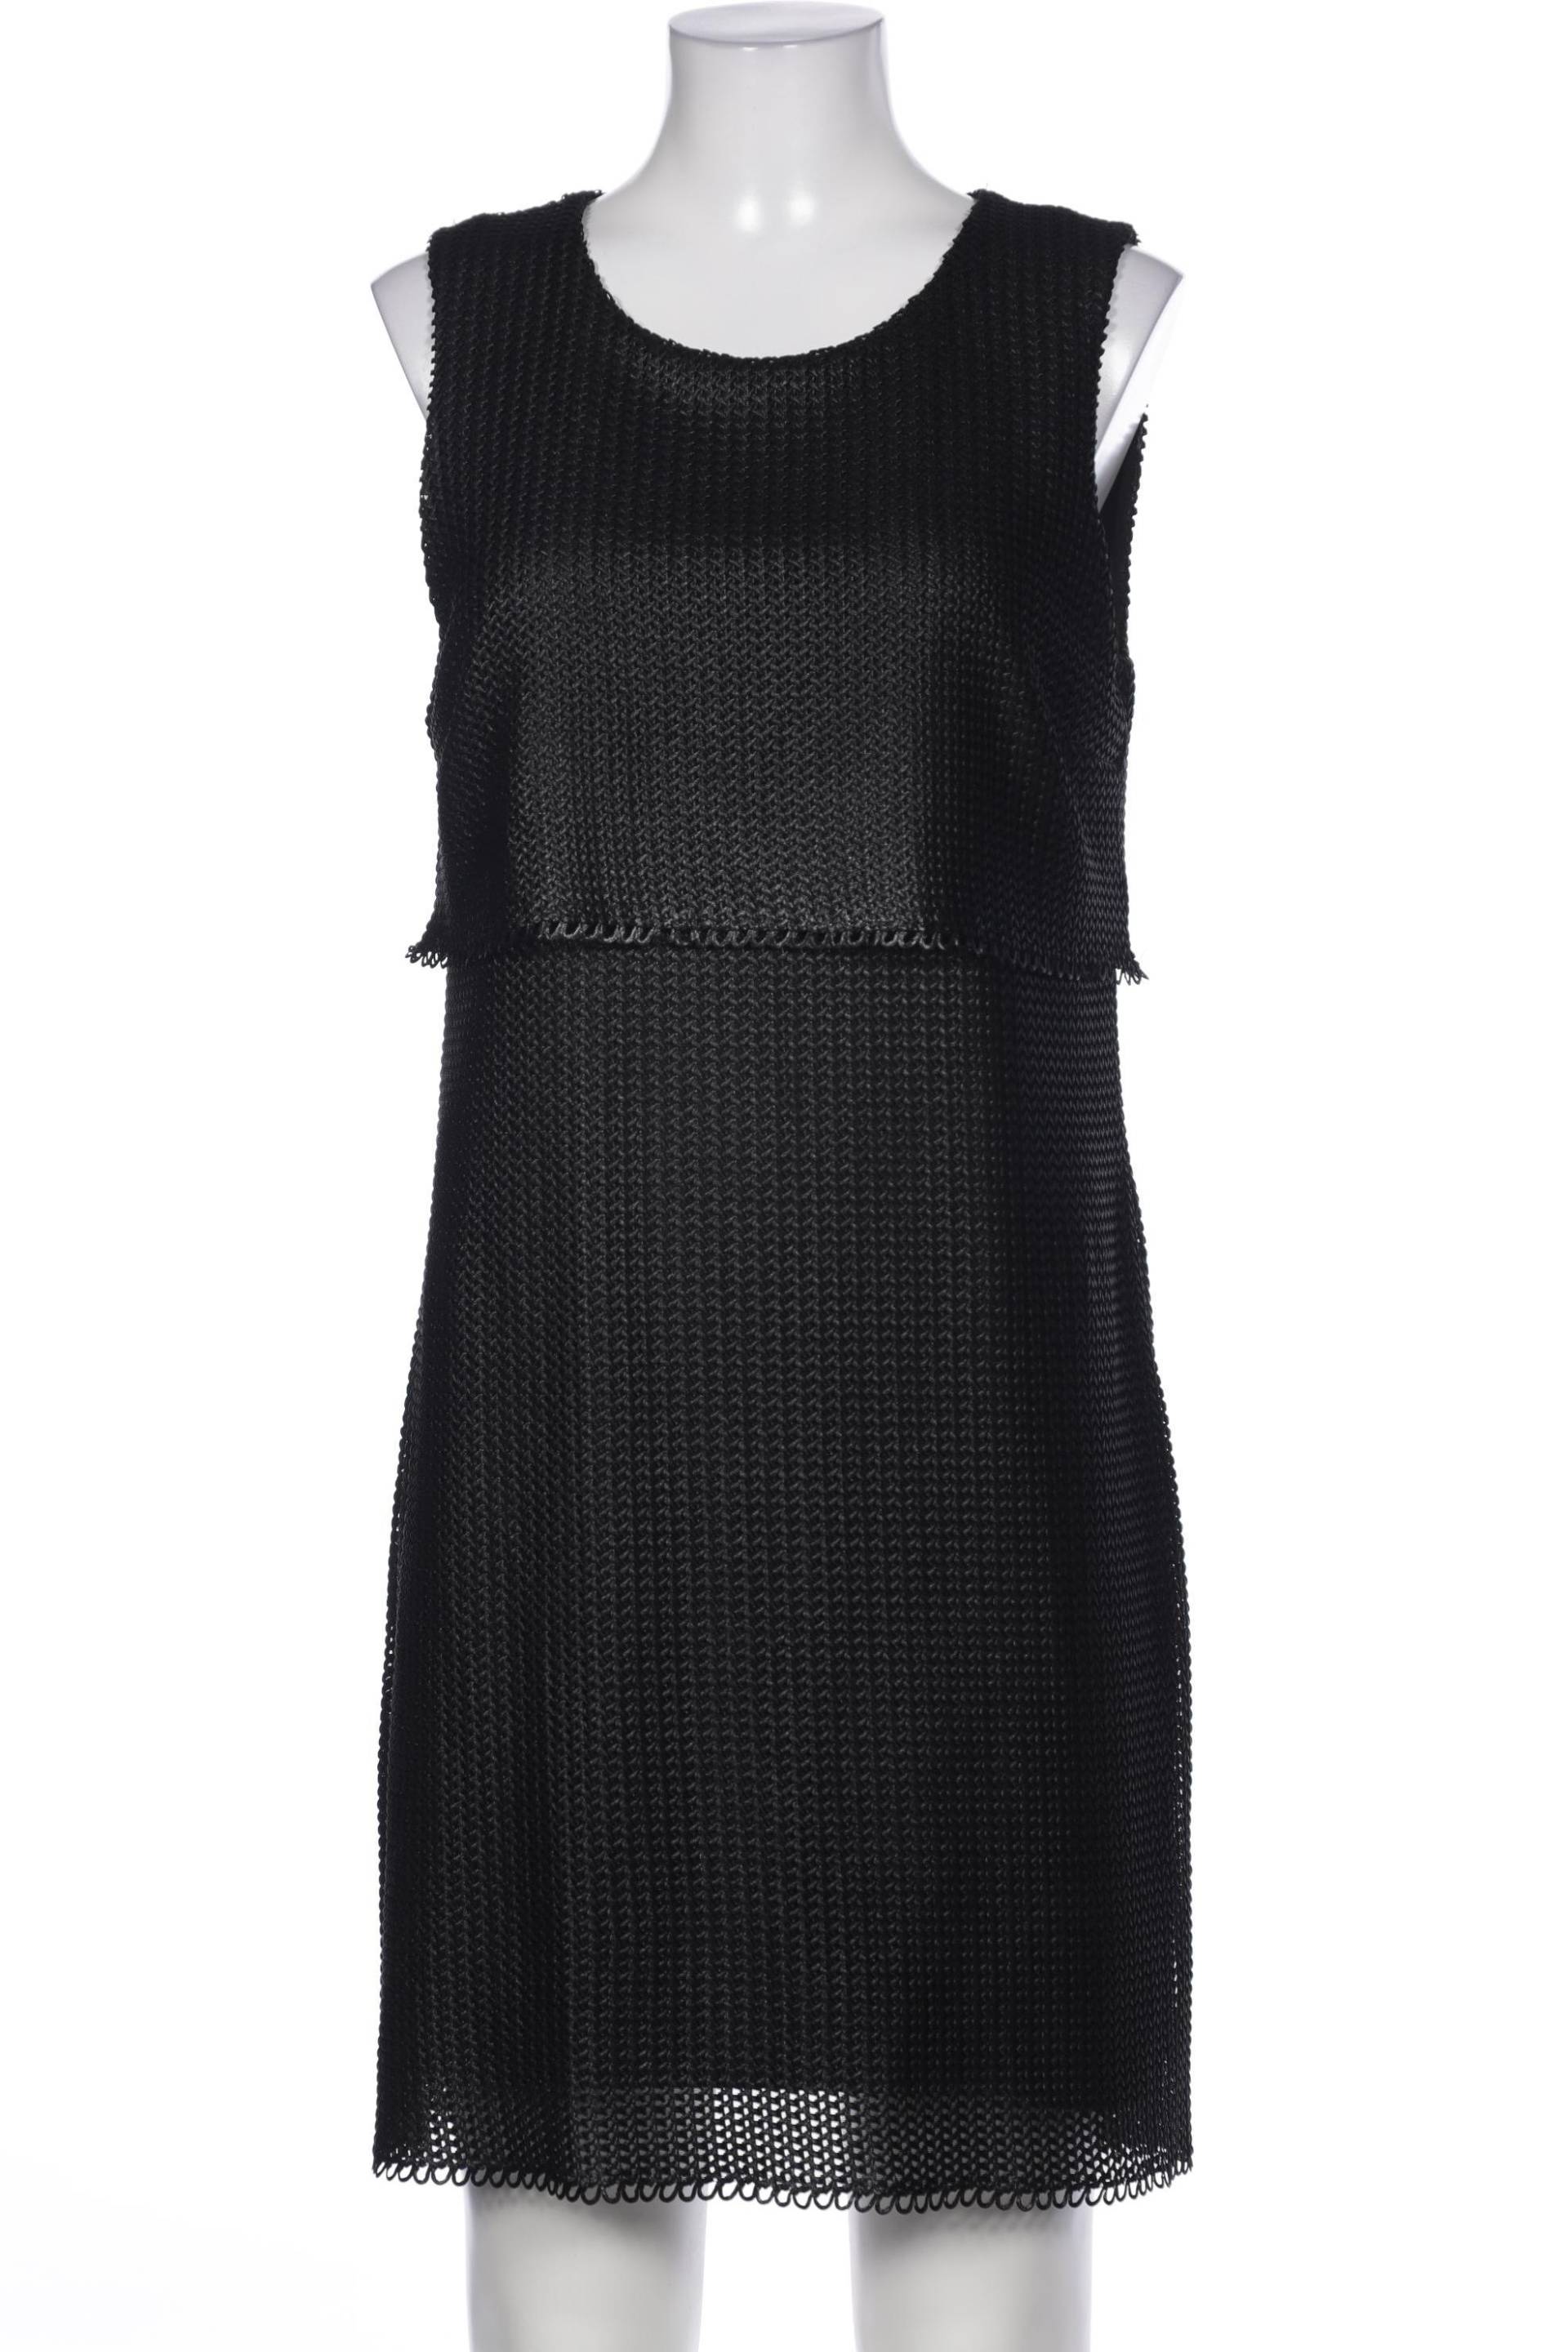 Ana Alcazar Damen Kleid, schwarz, Gr. 42 von Ana Alcazar